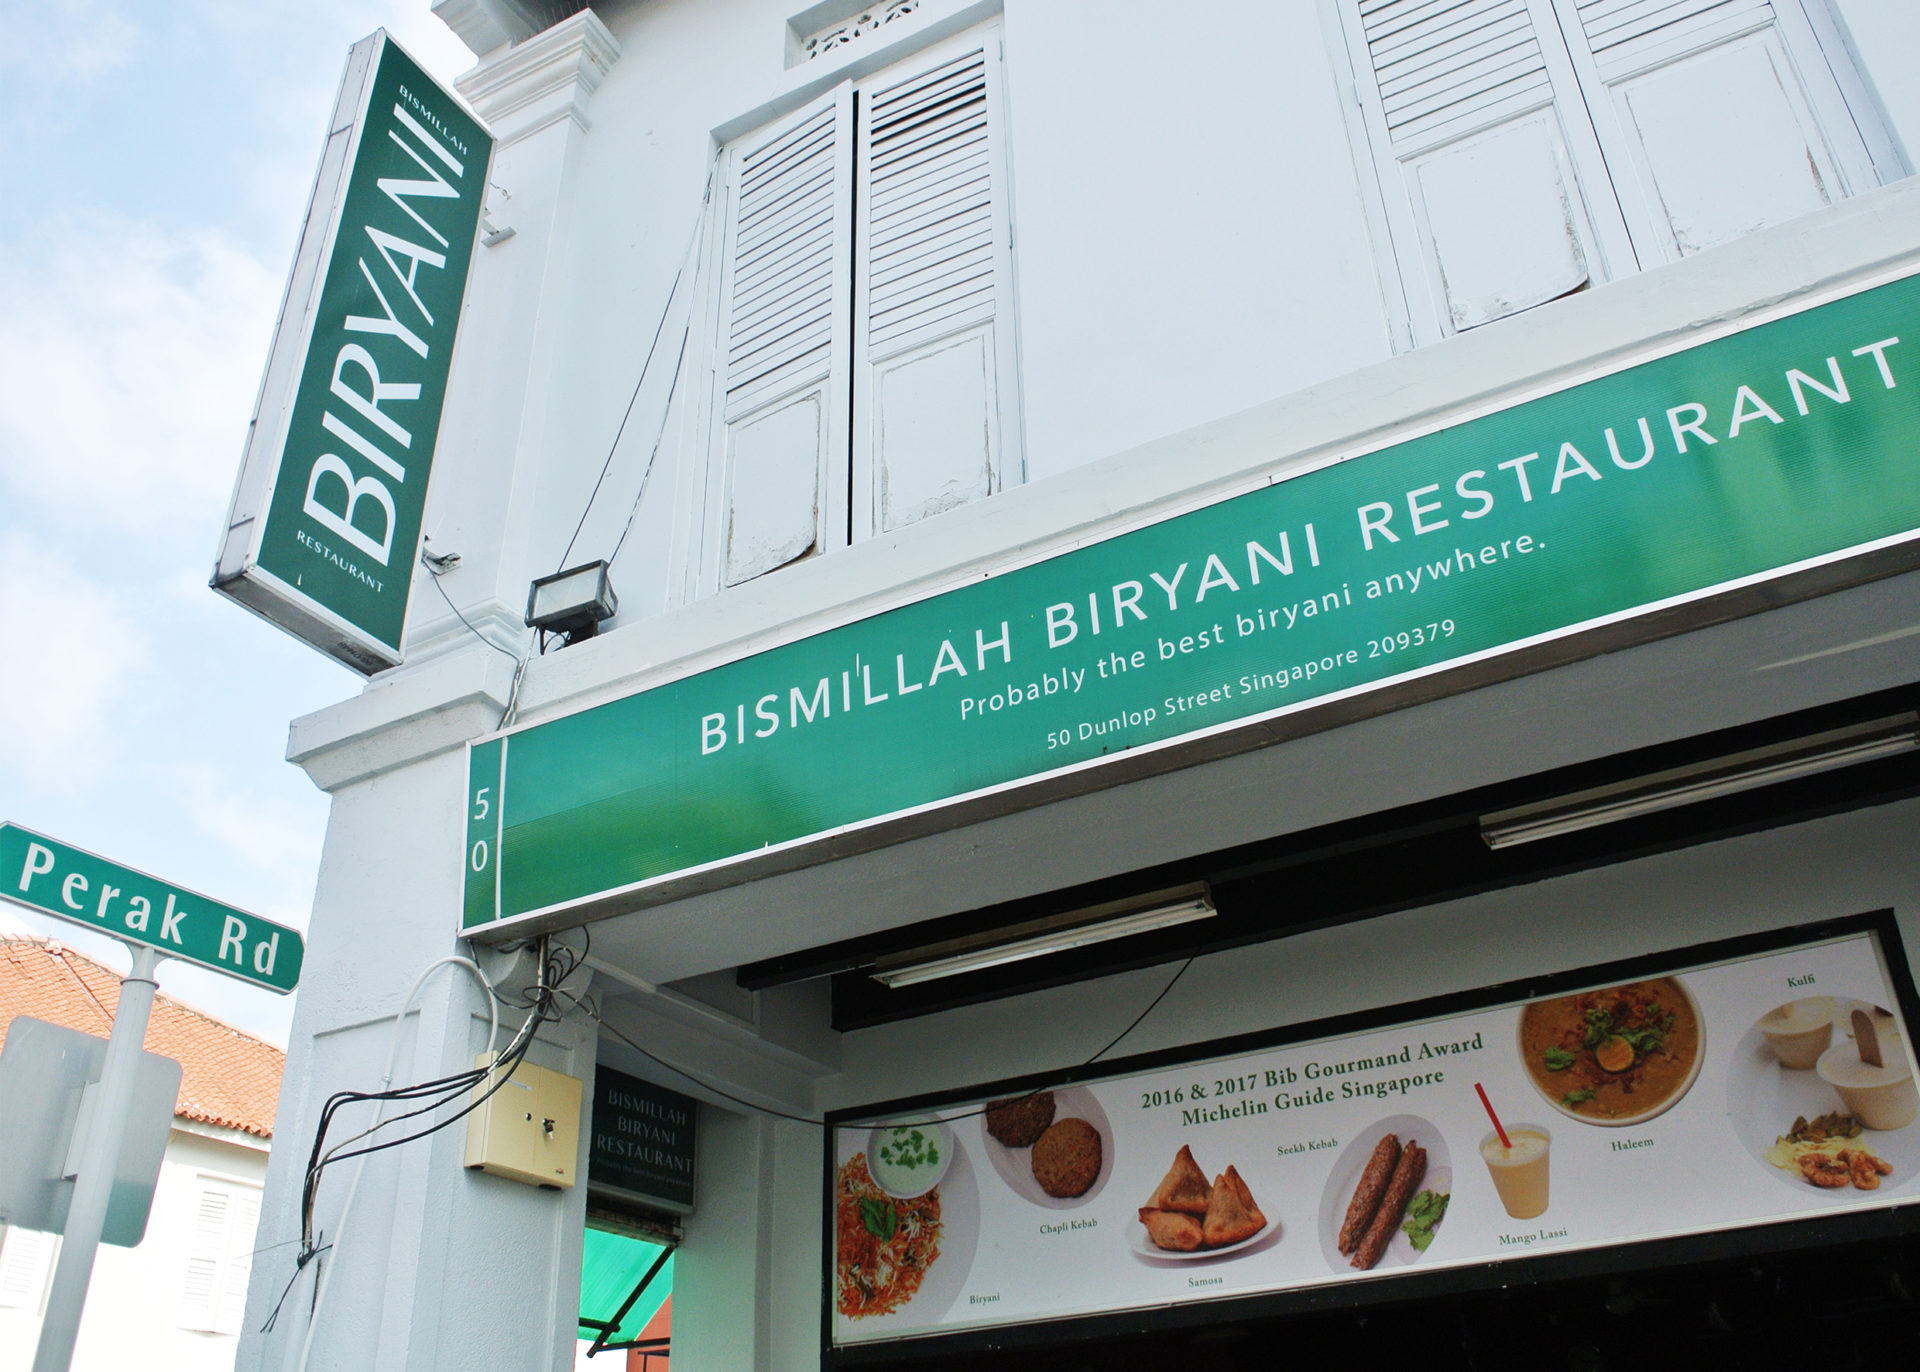 Bismillah-Biryani-Restaurant-shopfront-on-Dunlop